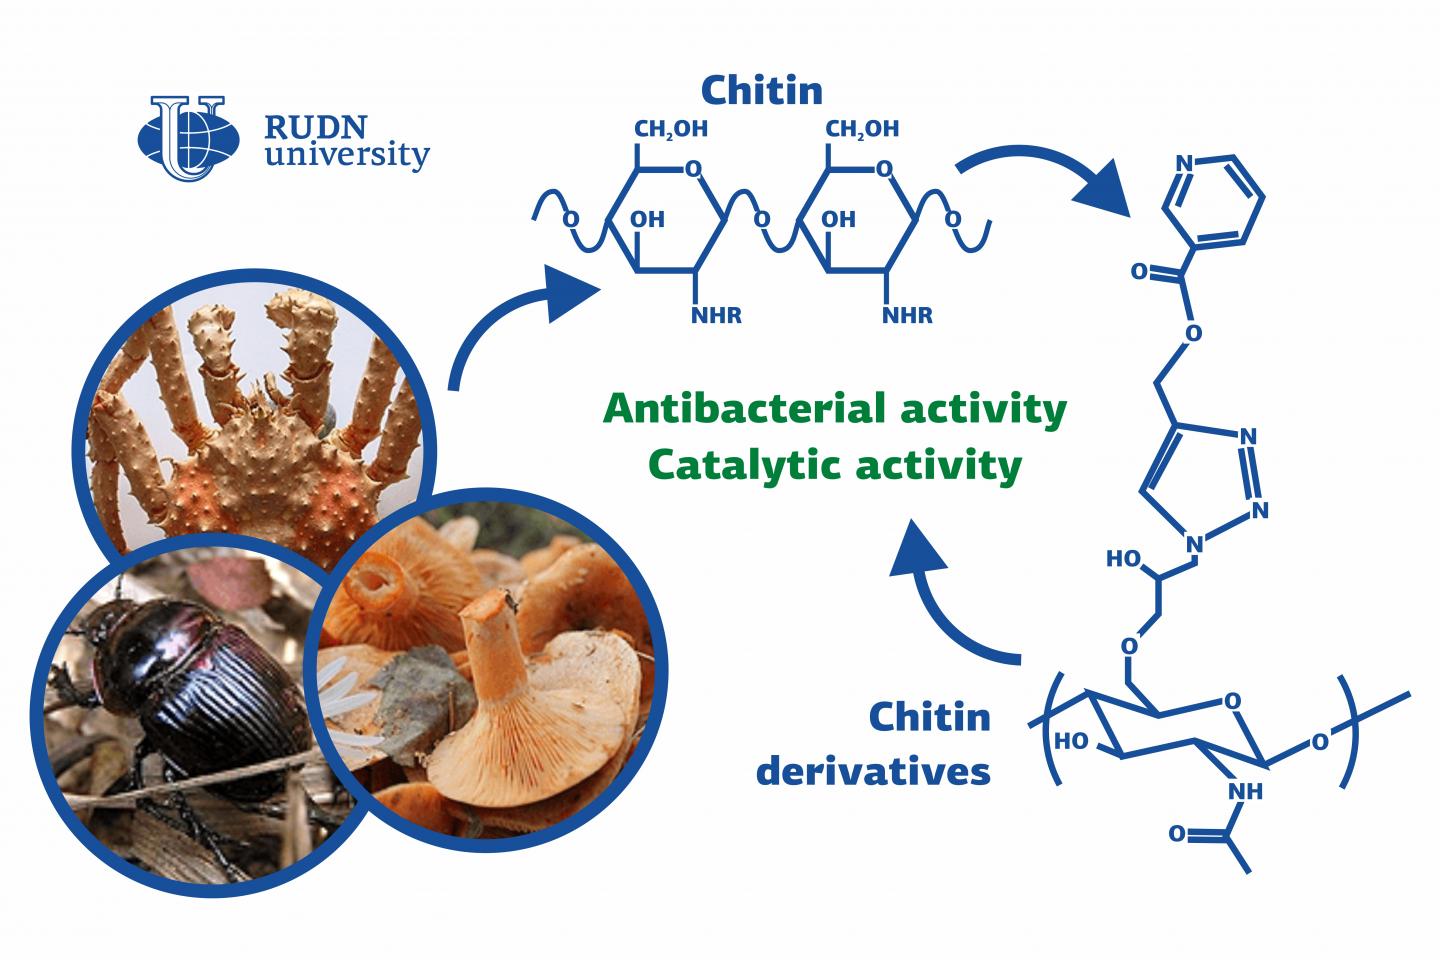 Chemists from RUDN University Synthesized Chitin-Based Antibiotics